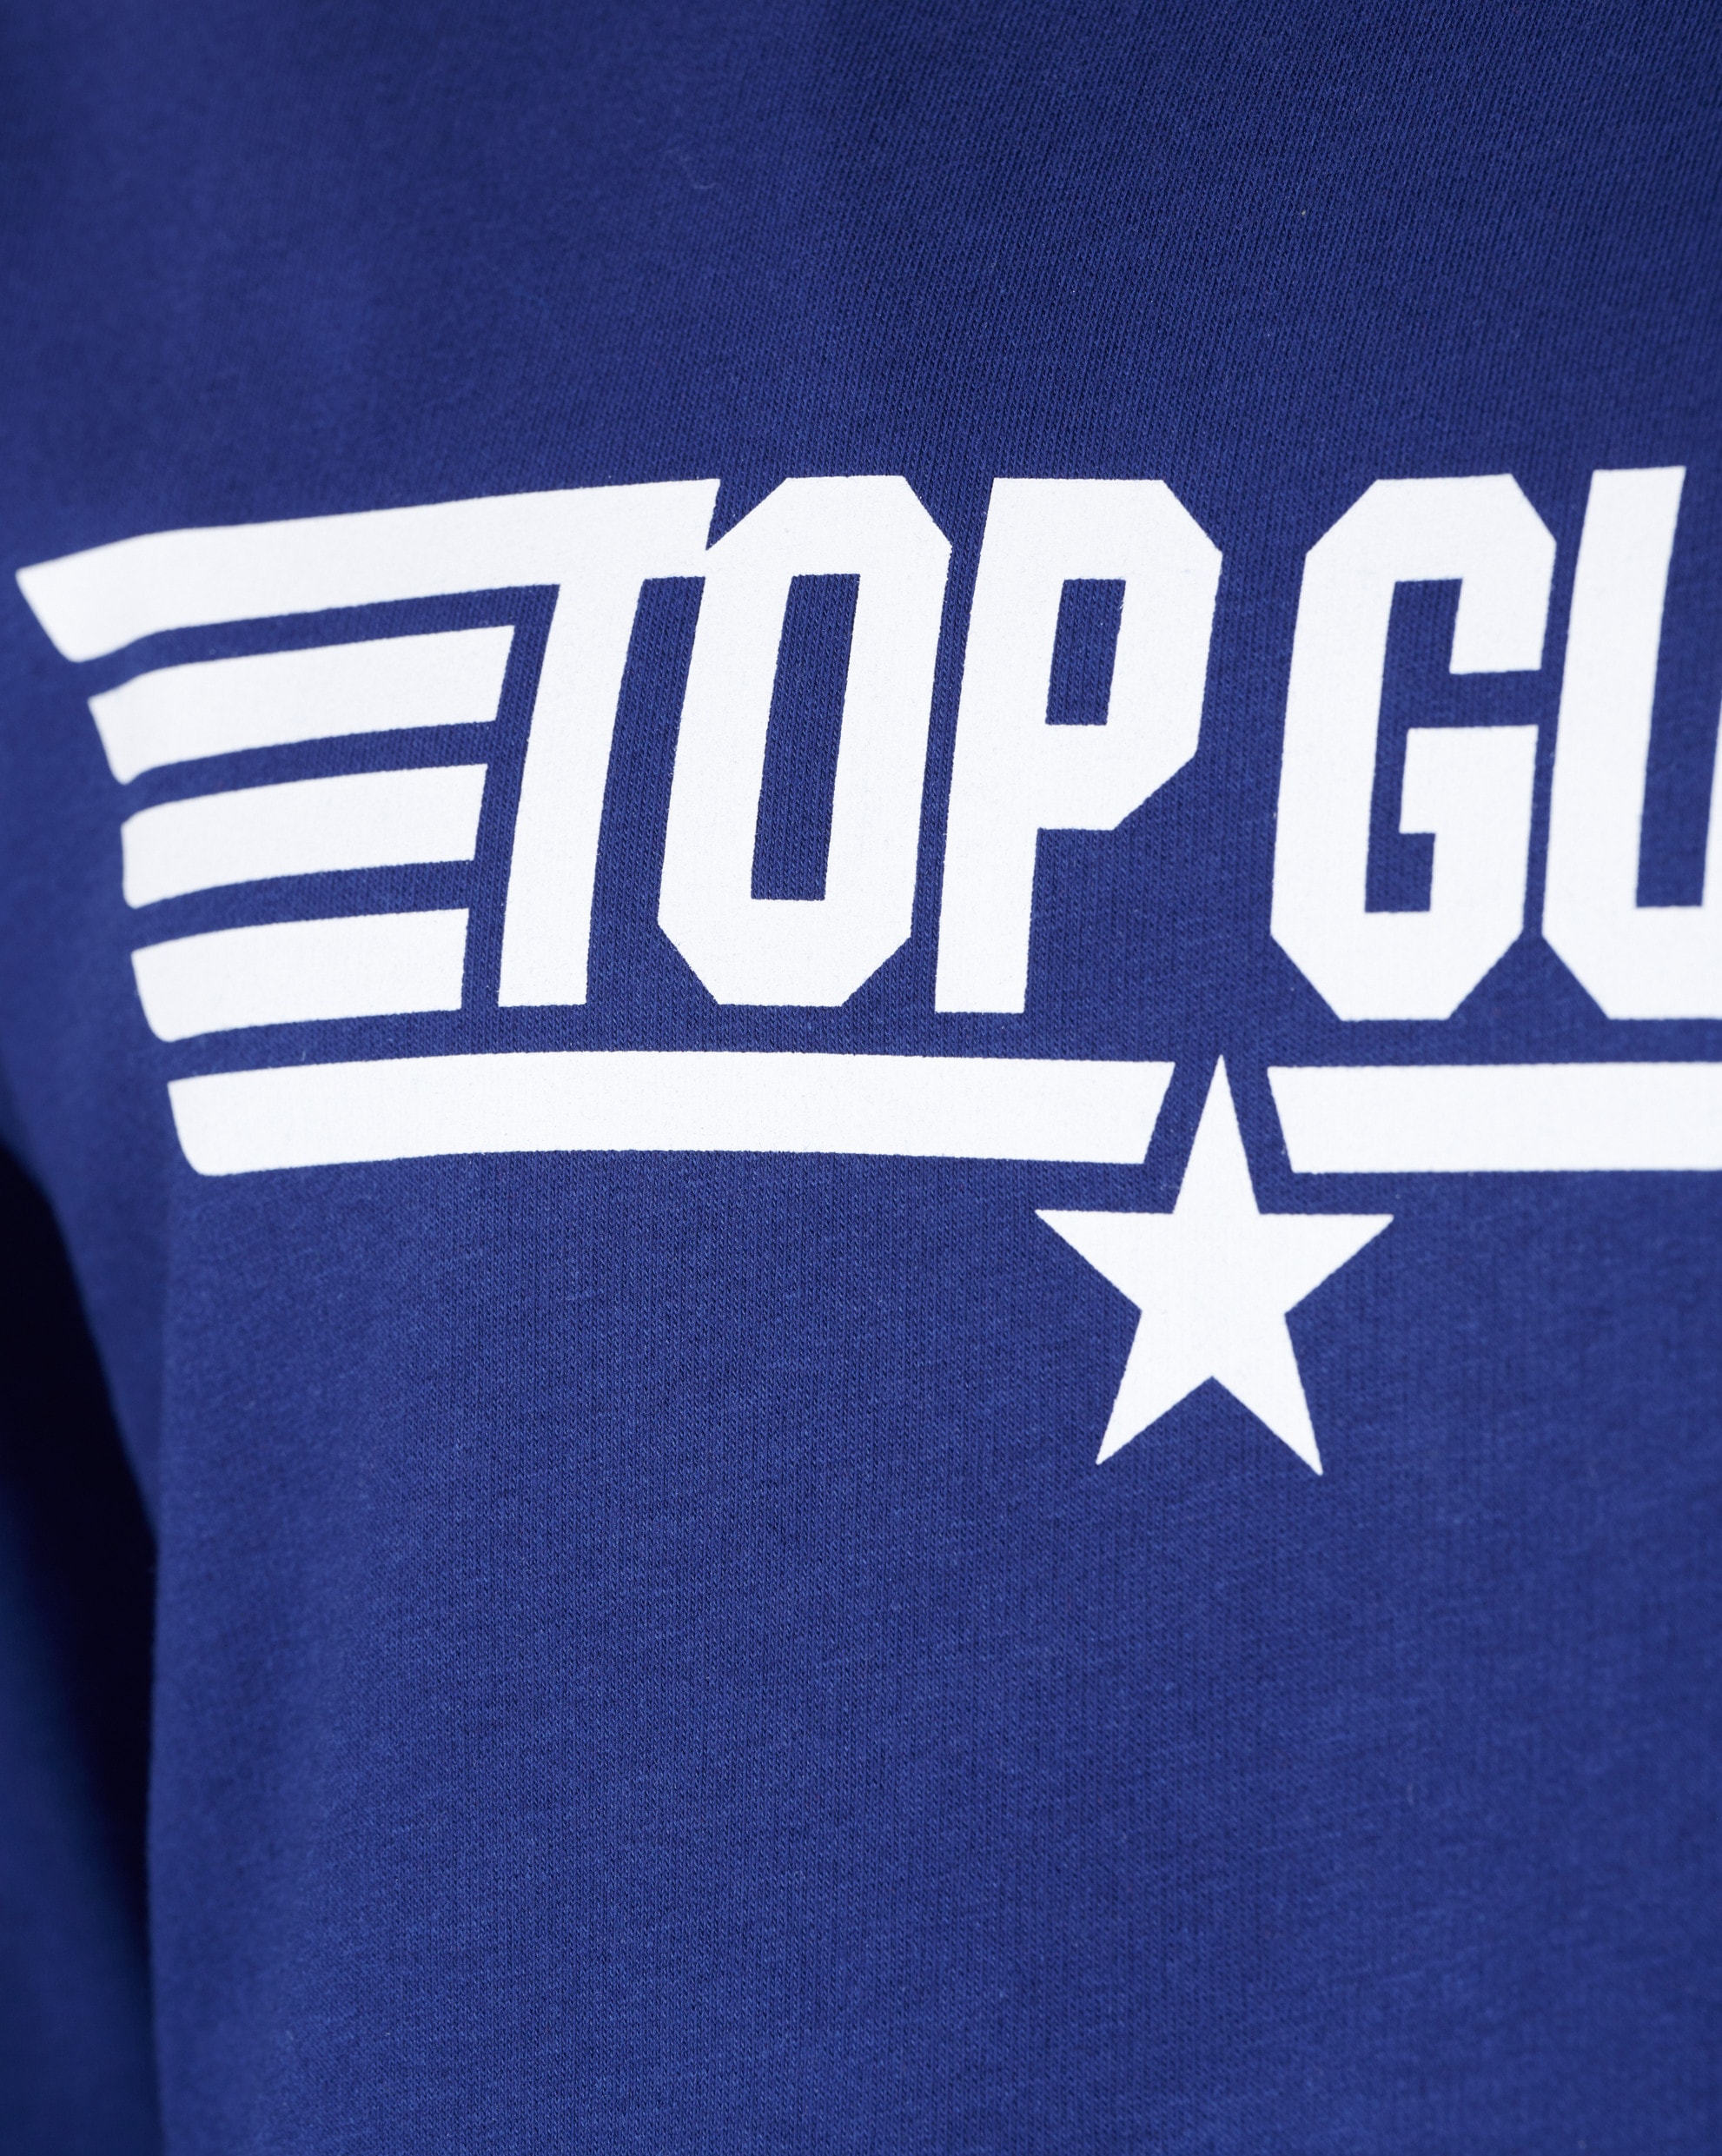 TOP GUN Sweatshirt »Sweatshirt PP201019«